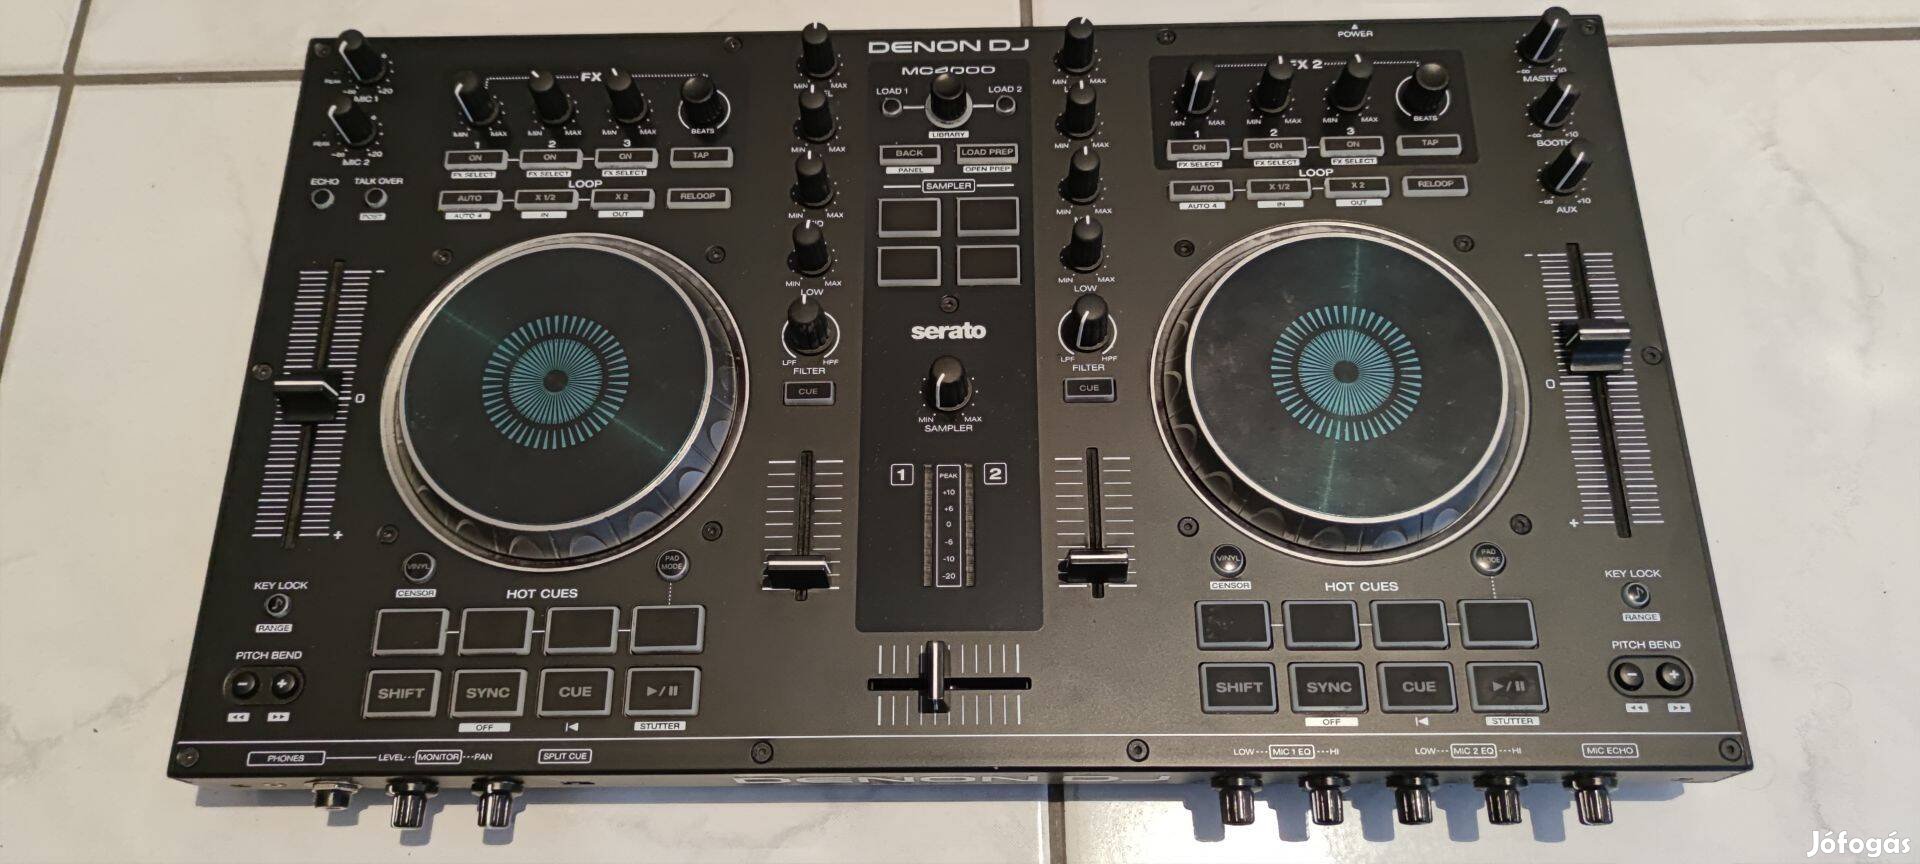 Denon DJ MC4000 Controller